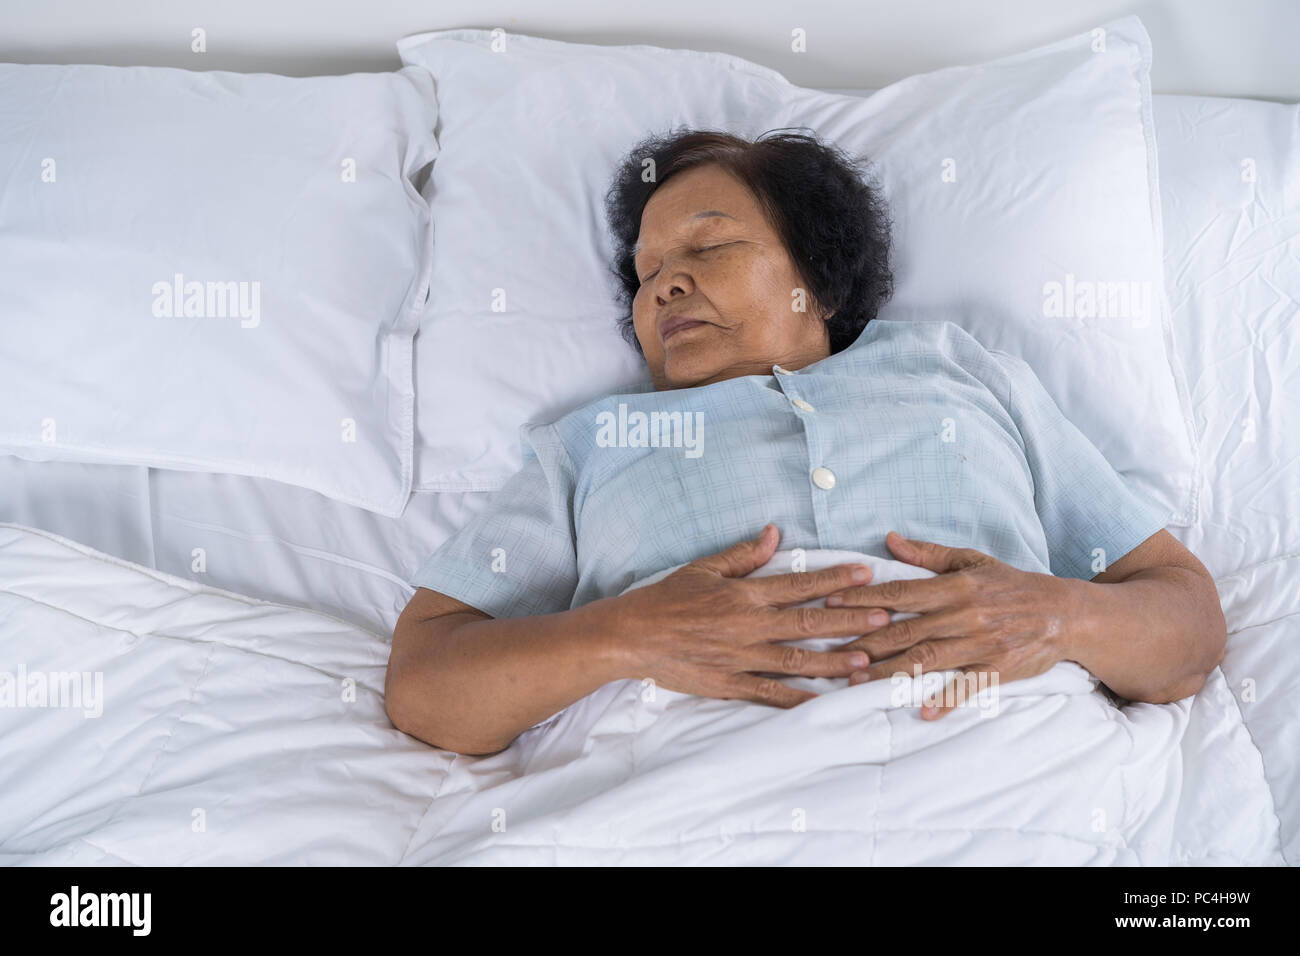 Alte Frau schlafen auf einem Bett im Schlafzimmer Stockfotografie - Alamy